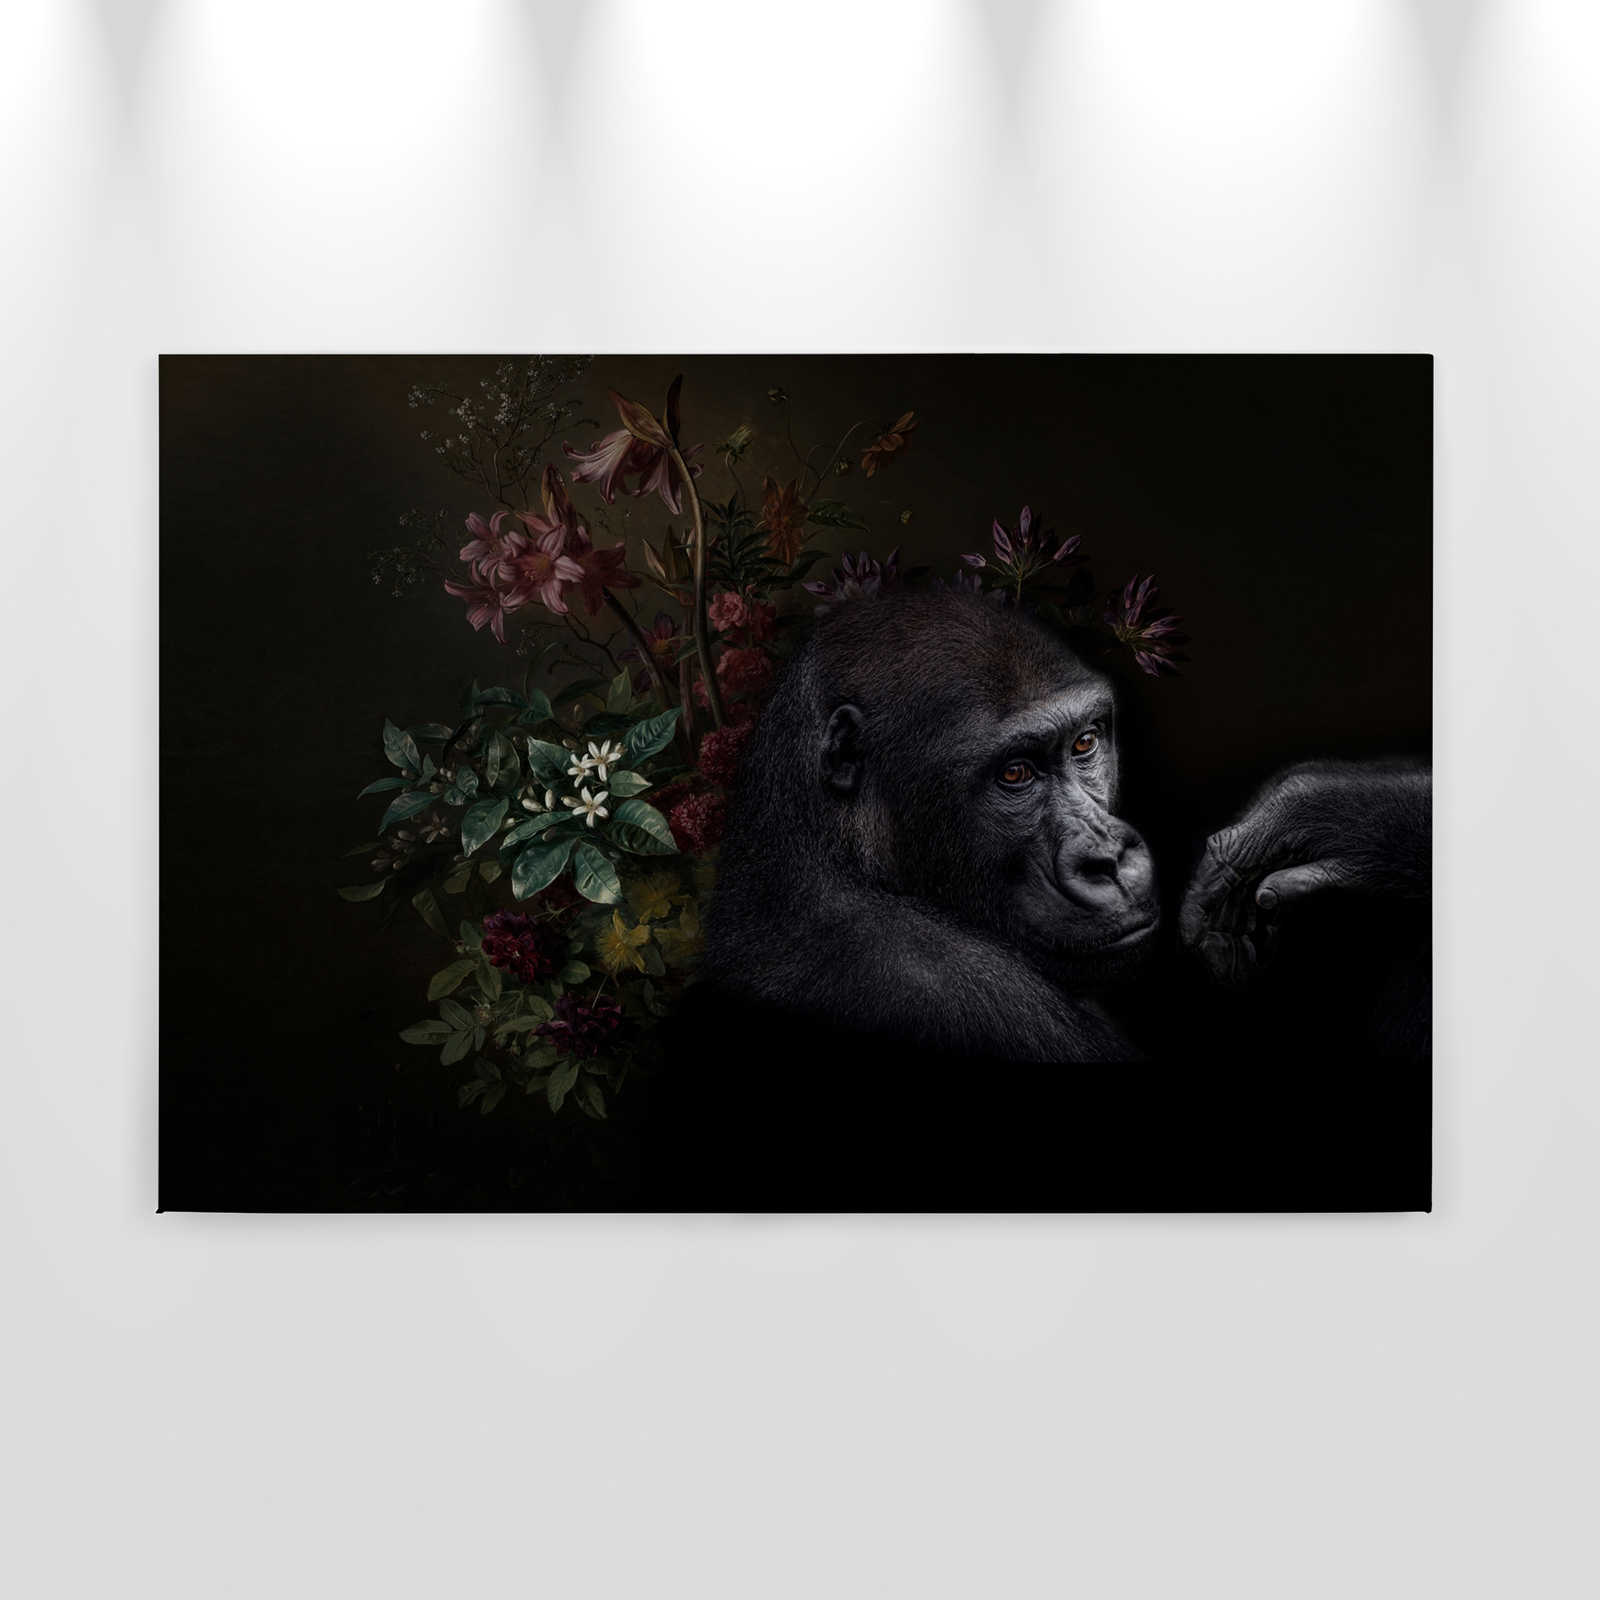             Cuadro Gorila Retrato con flores - 0,90 m x 0,60 m
        